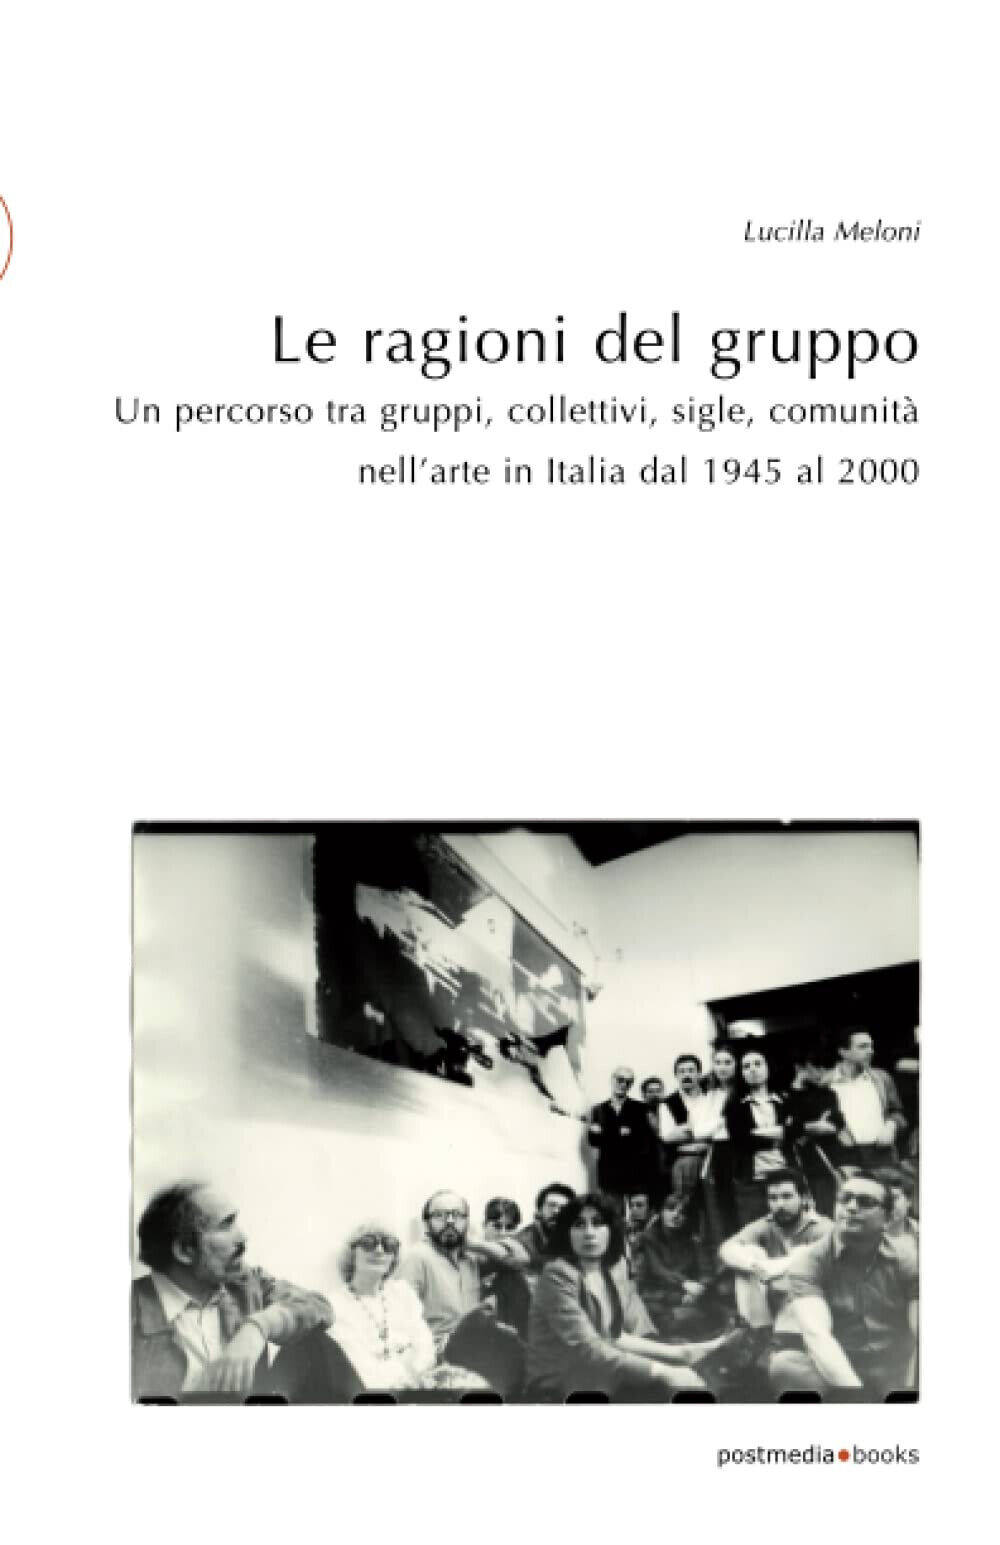 Le ragioni del gruppo - Lucilla Meloni - Postmedia Books, 2020 libro usato